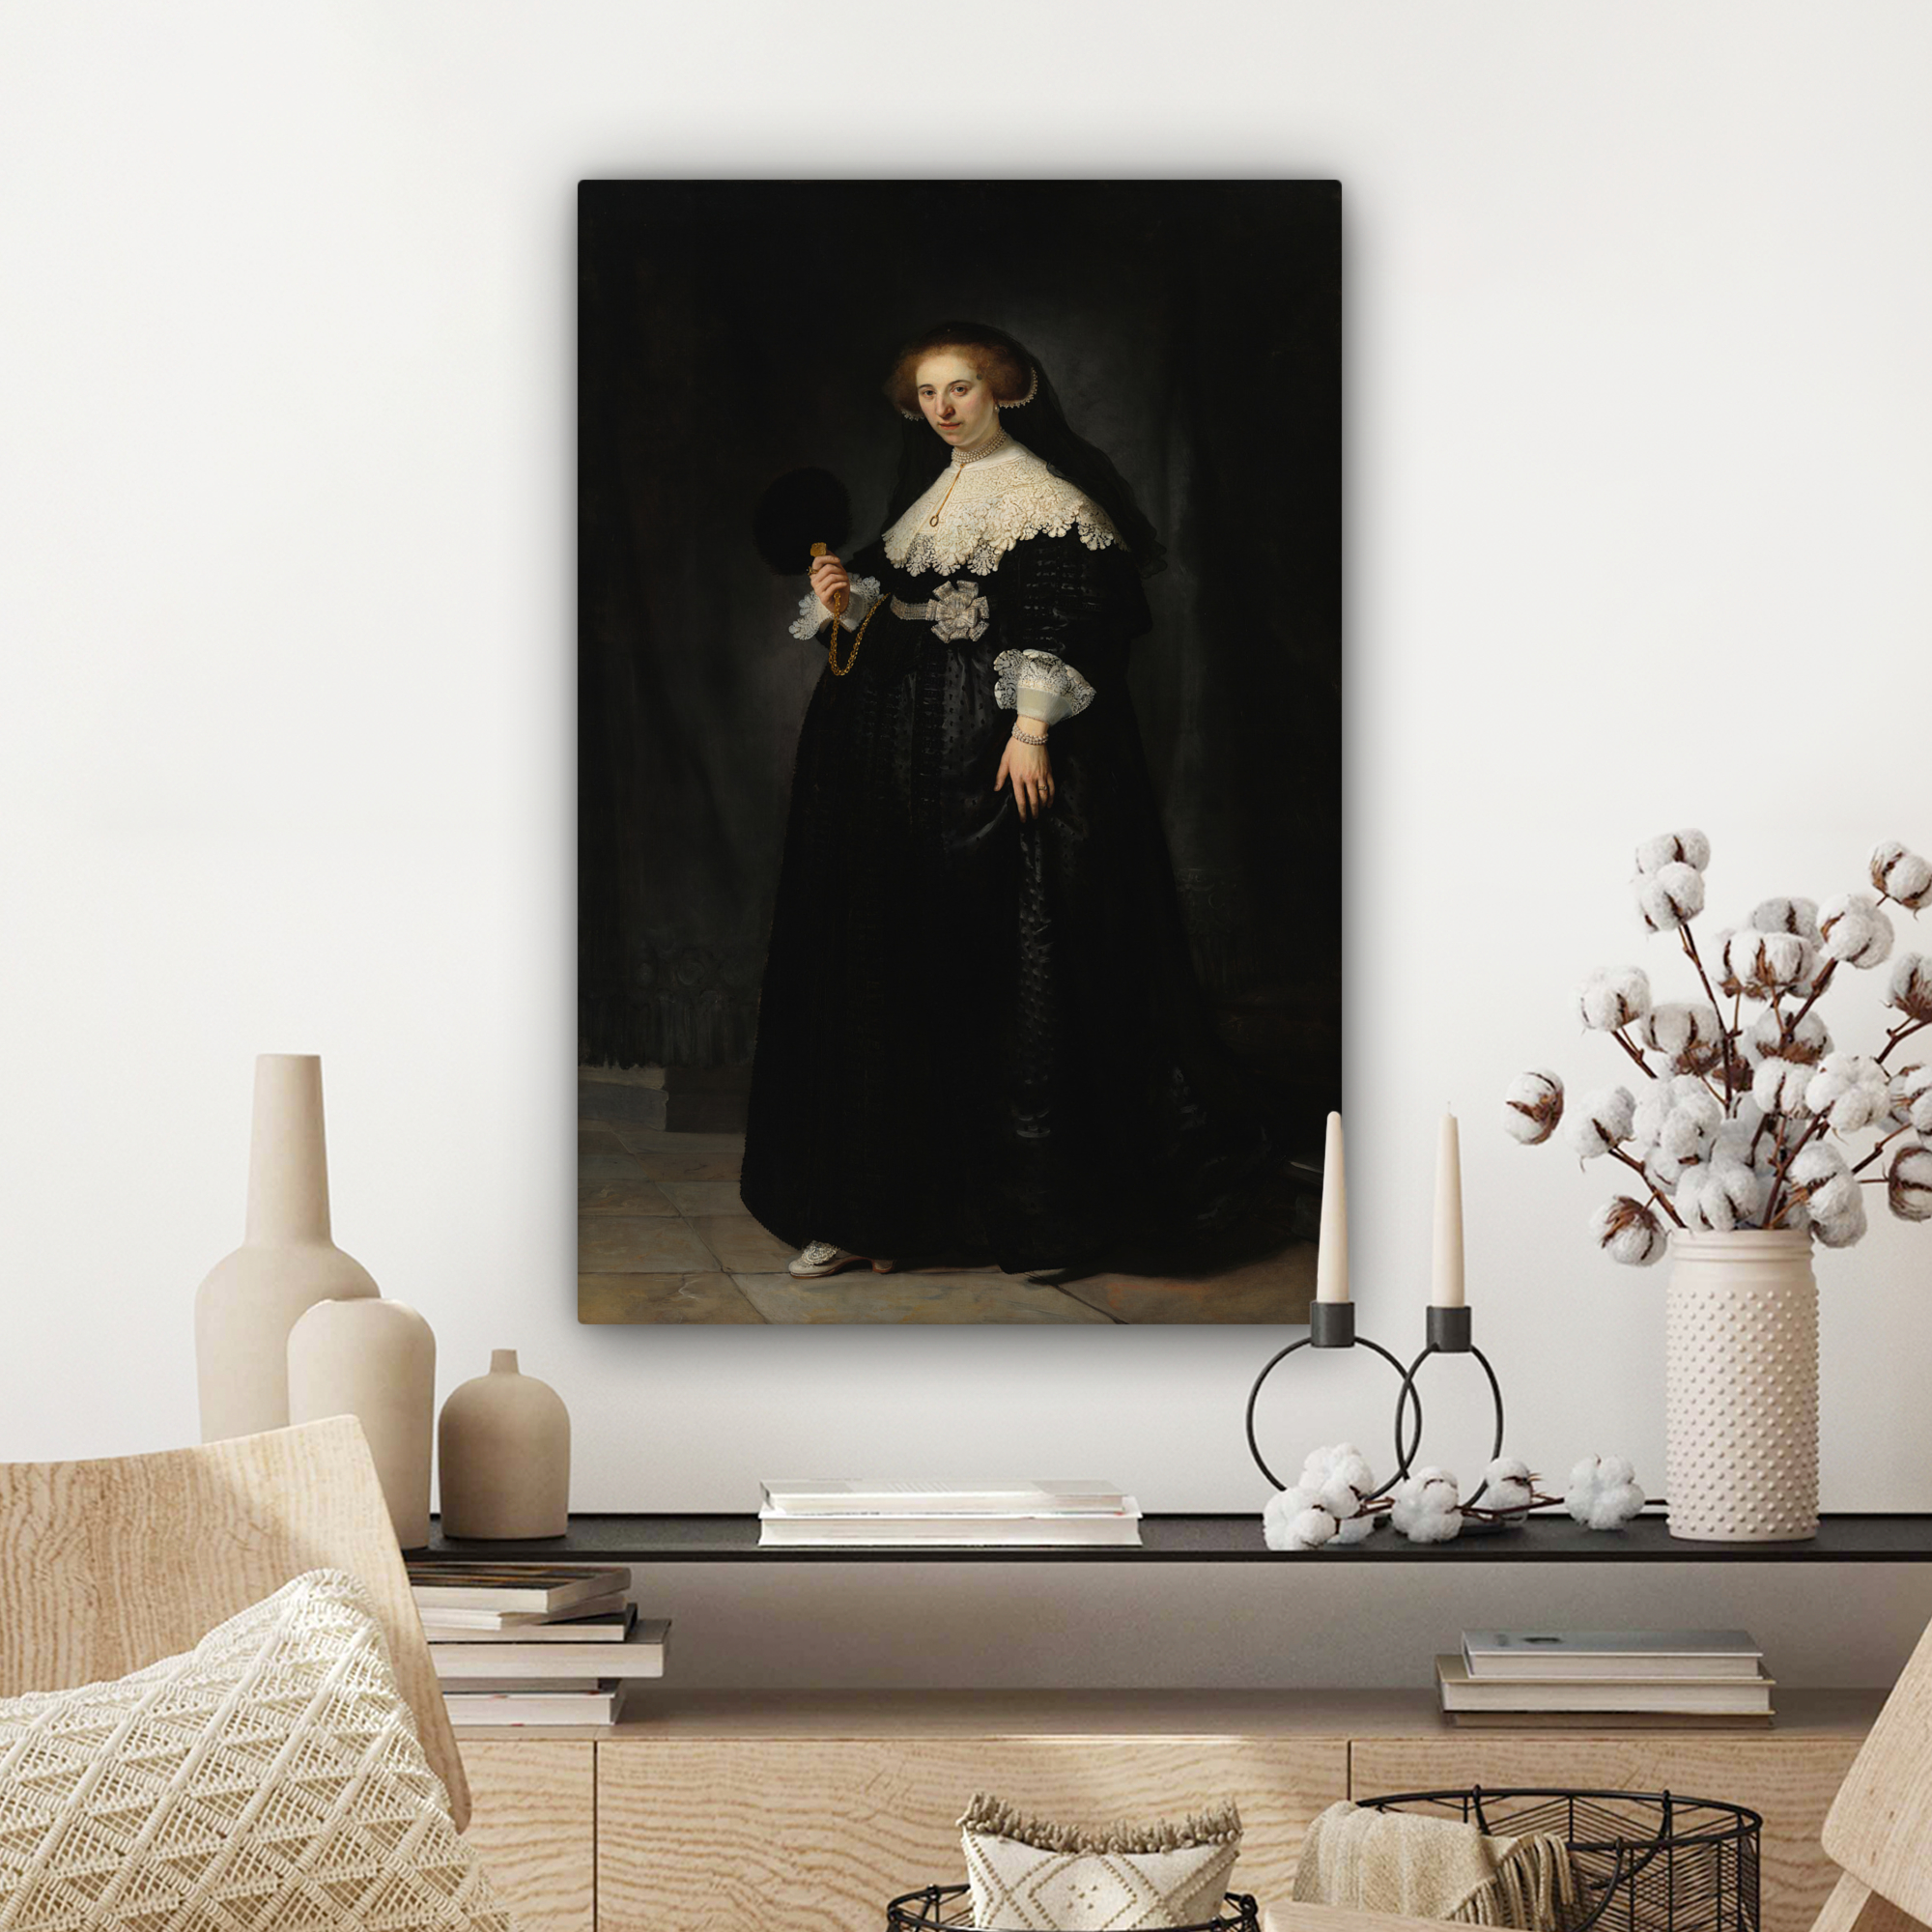 Leinwandbild - Das Hochzeitsbildnis von Oopjen Coppit - Rembrandt van Rijn-3